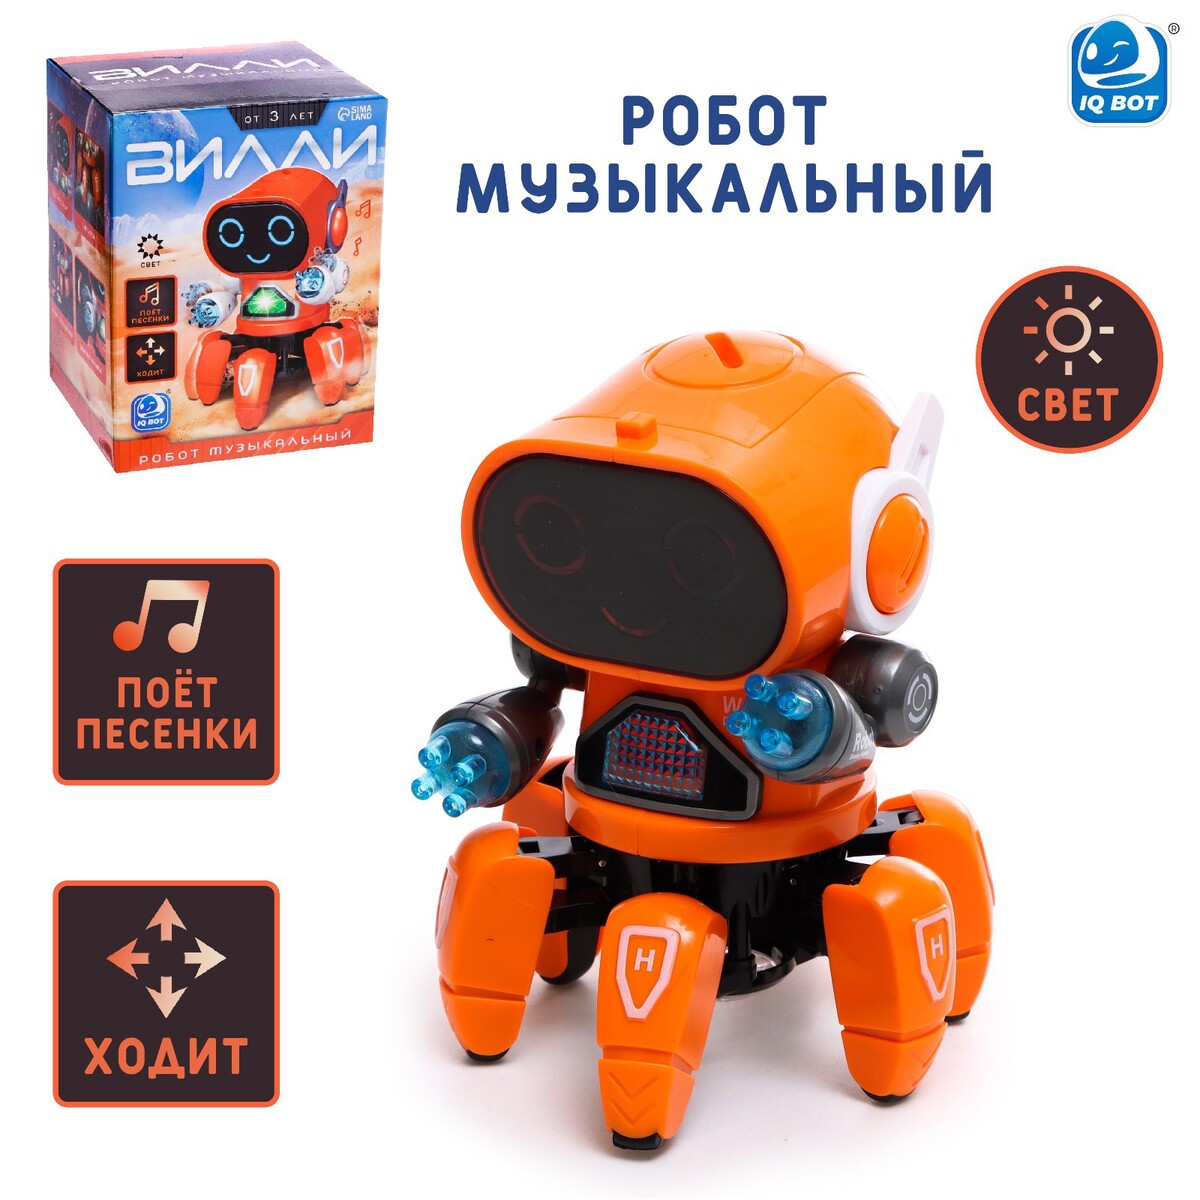 Робот музыкальный робот iq bot музыкальный вилли звук свет ходит оранжевый sl 05925c